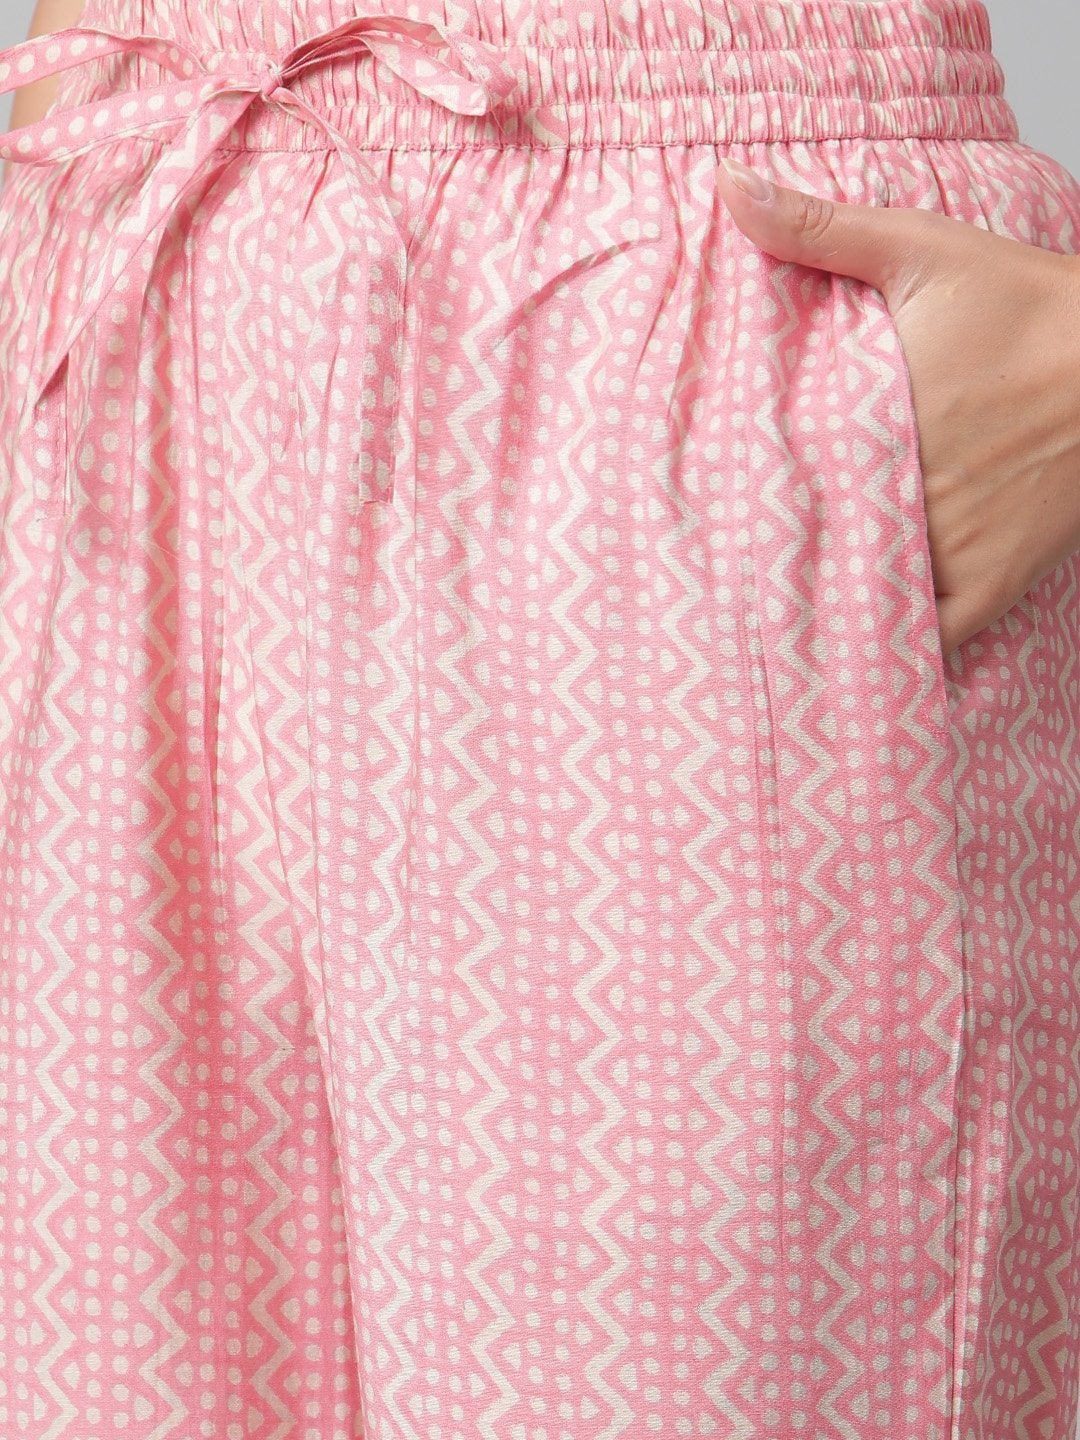 Women's Pink Rayon Kaftan Pant Set - Noz2Toz